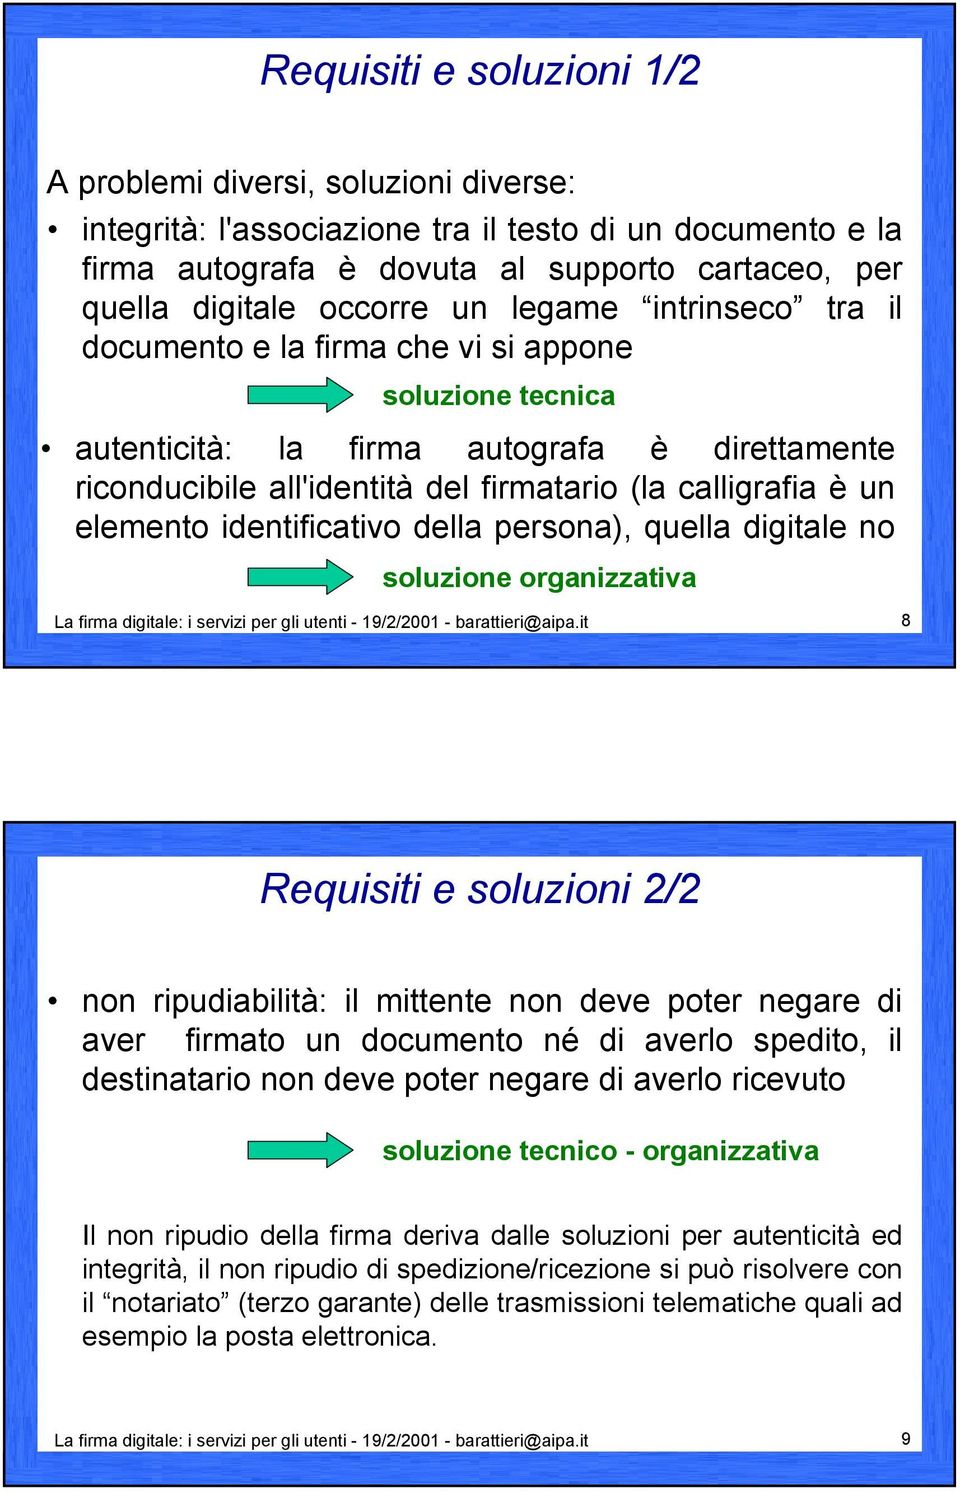 elemento identificativo della persona), quella digitale no soluzione organizzativa La firma digitale: i servizi per gli utenti - 19/2/2001 - barattieri@aipa.